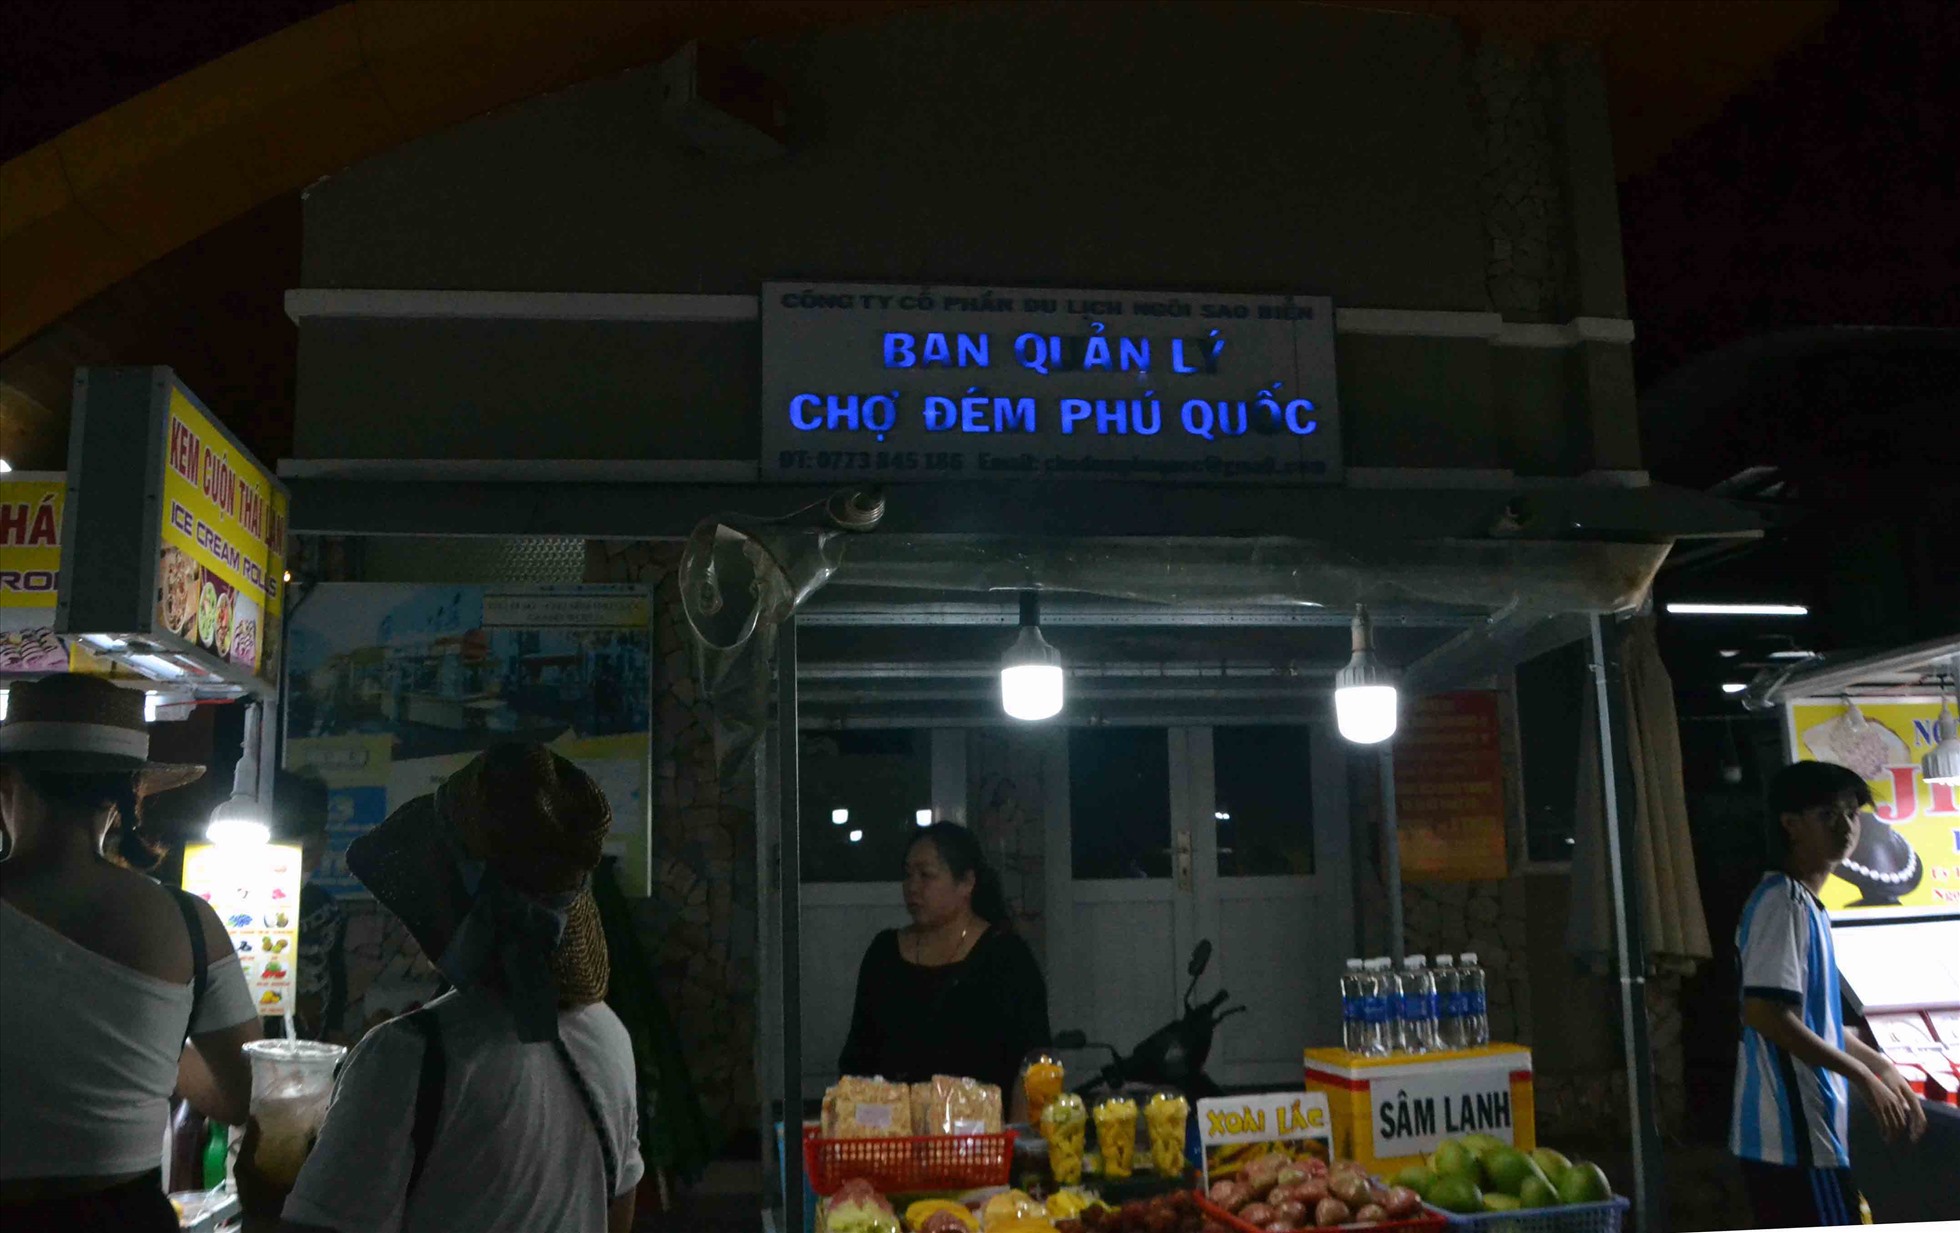 Trụ sở Ban quản lý Chợ đêm Phú Quốc nằm trong khu vực Chợ đêm Phú Quốc (thị trấn Dương Đông). Ảnh: Thanh Mai